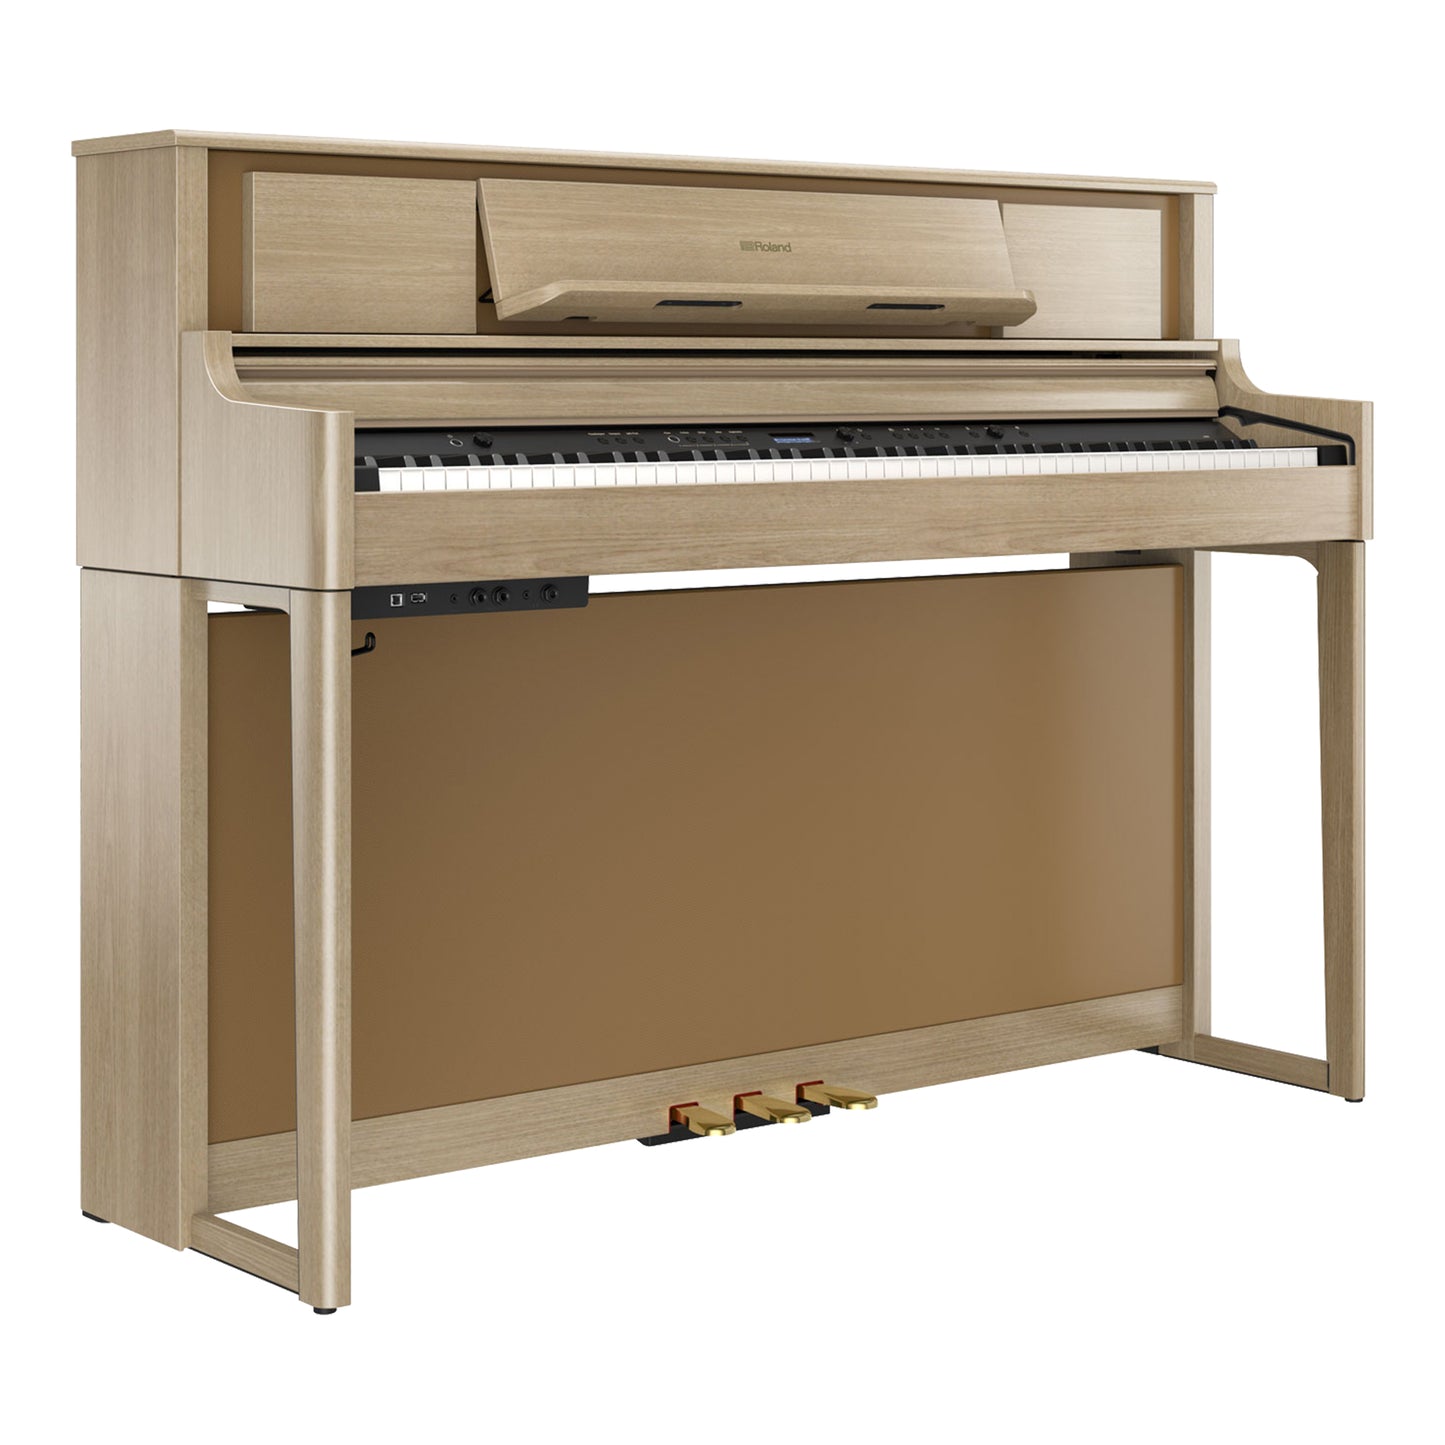 Roland LX705 Premium Upright Wooden Keys Digital Piano, Light Oak